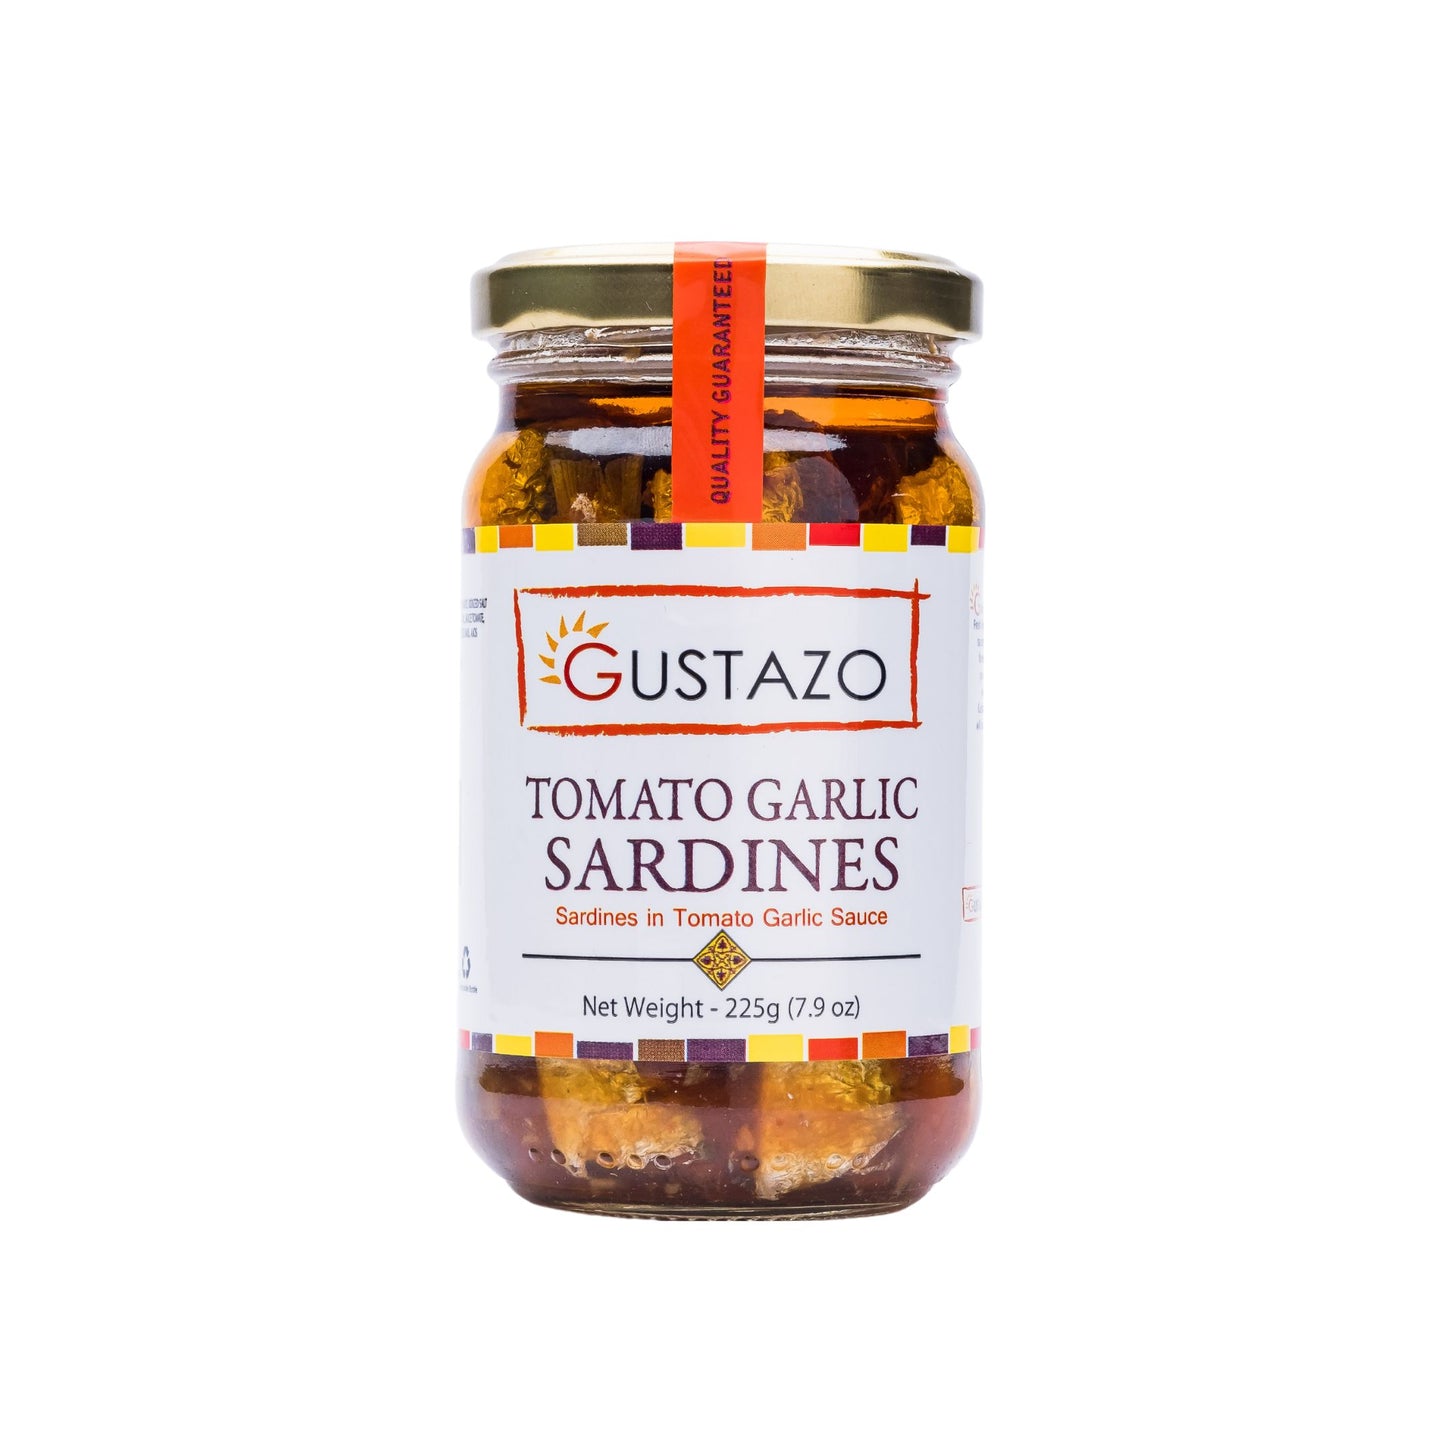 Tomato Garlic Sardines with Single Box